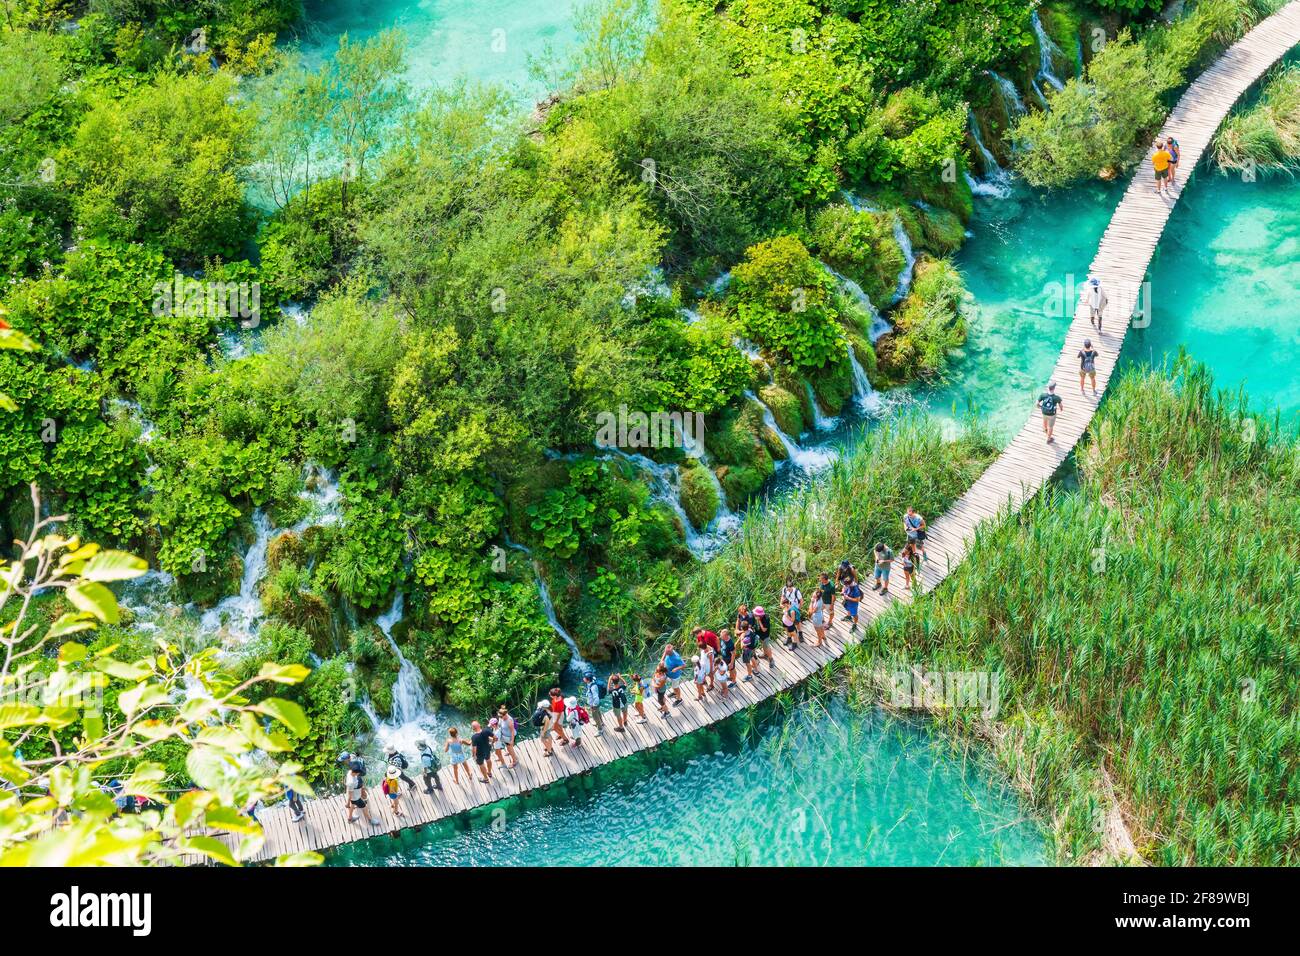 Les lacs de Plitvice, Croatie. Cascades et sentier en bois du parc national des Lacs de Plitvice. Banque D'Images